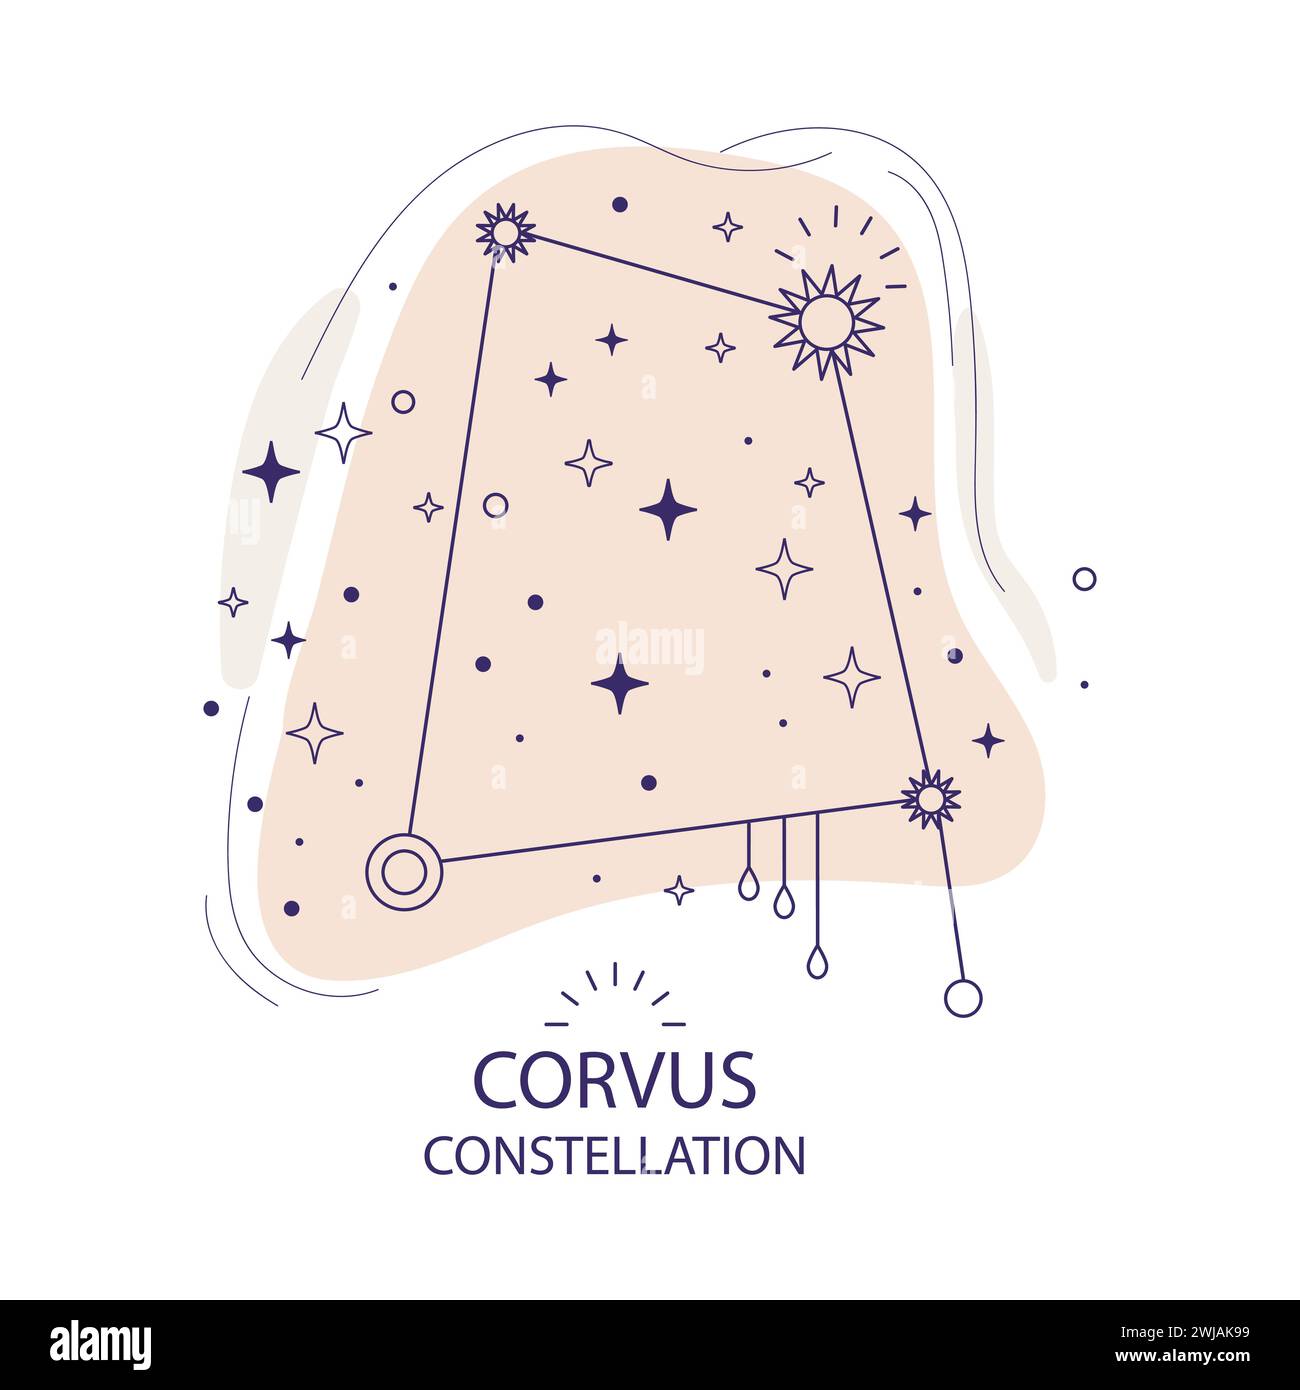 Star constellation Corvus vector illustration Stock Vector